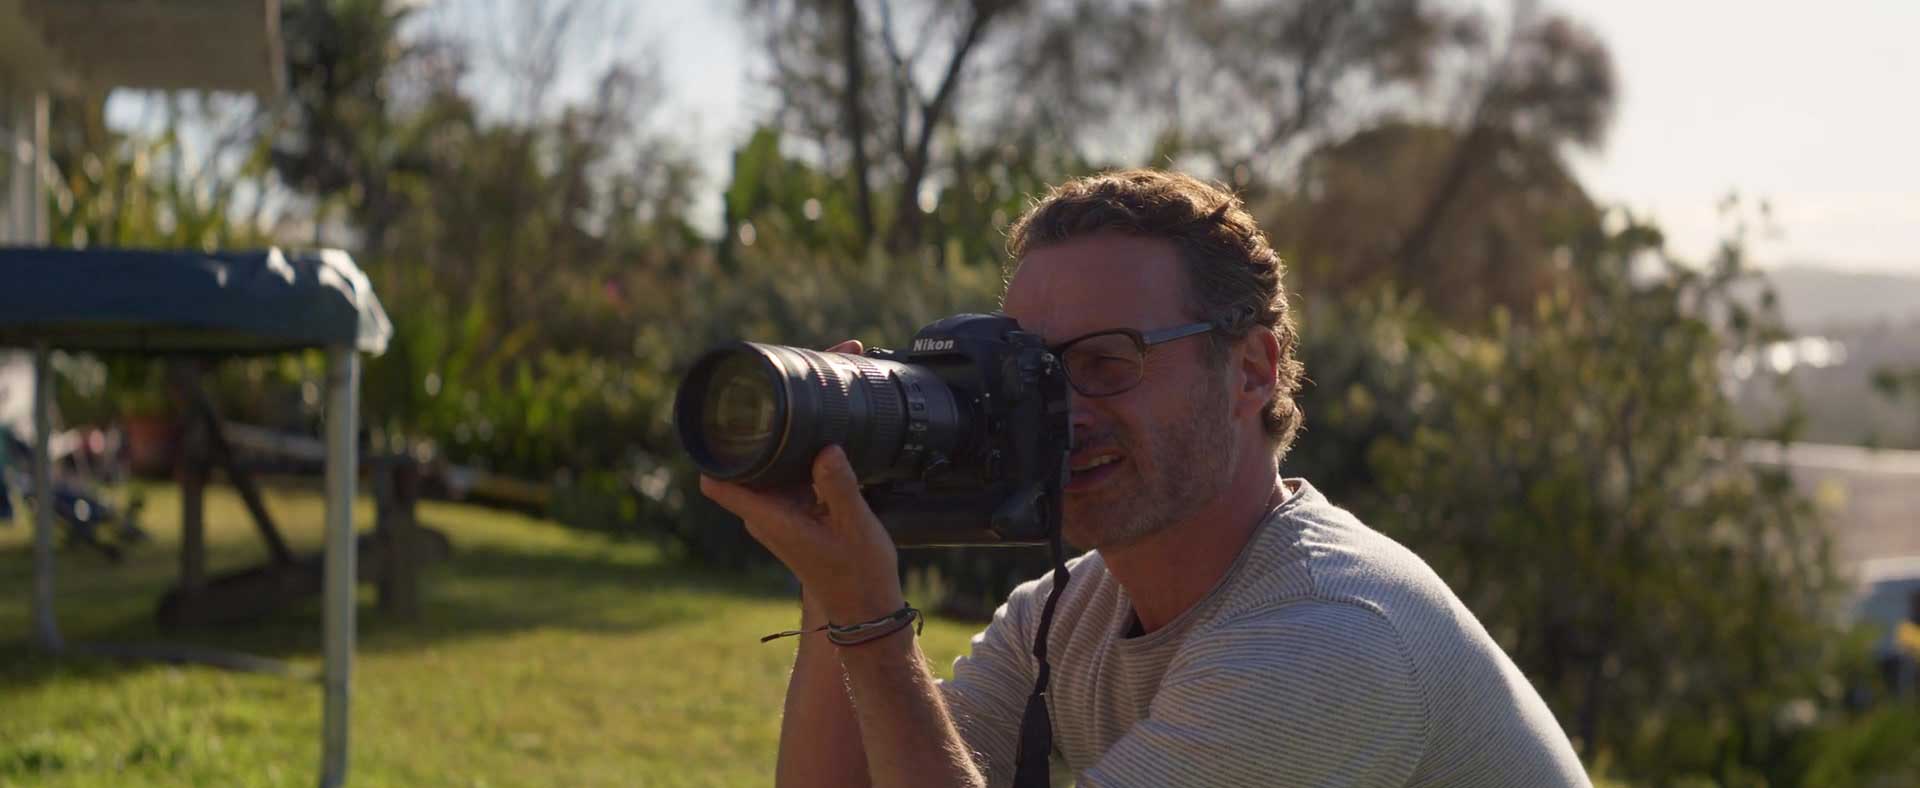 اندرو لینکلن، بازیگر نقش ریک گرایمز در سریال The Walking Dead مشغول عکس برداری از شخصیت نائومی واتس در فیلم پنگوئن بلوم